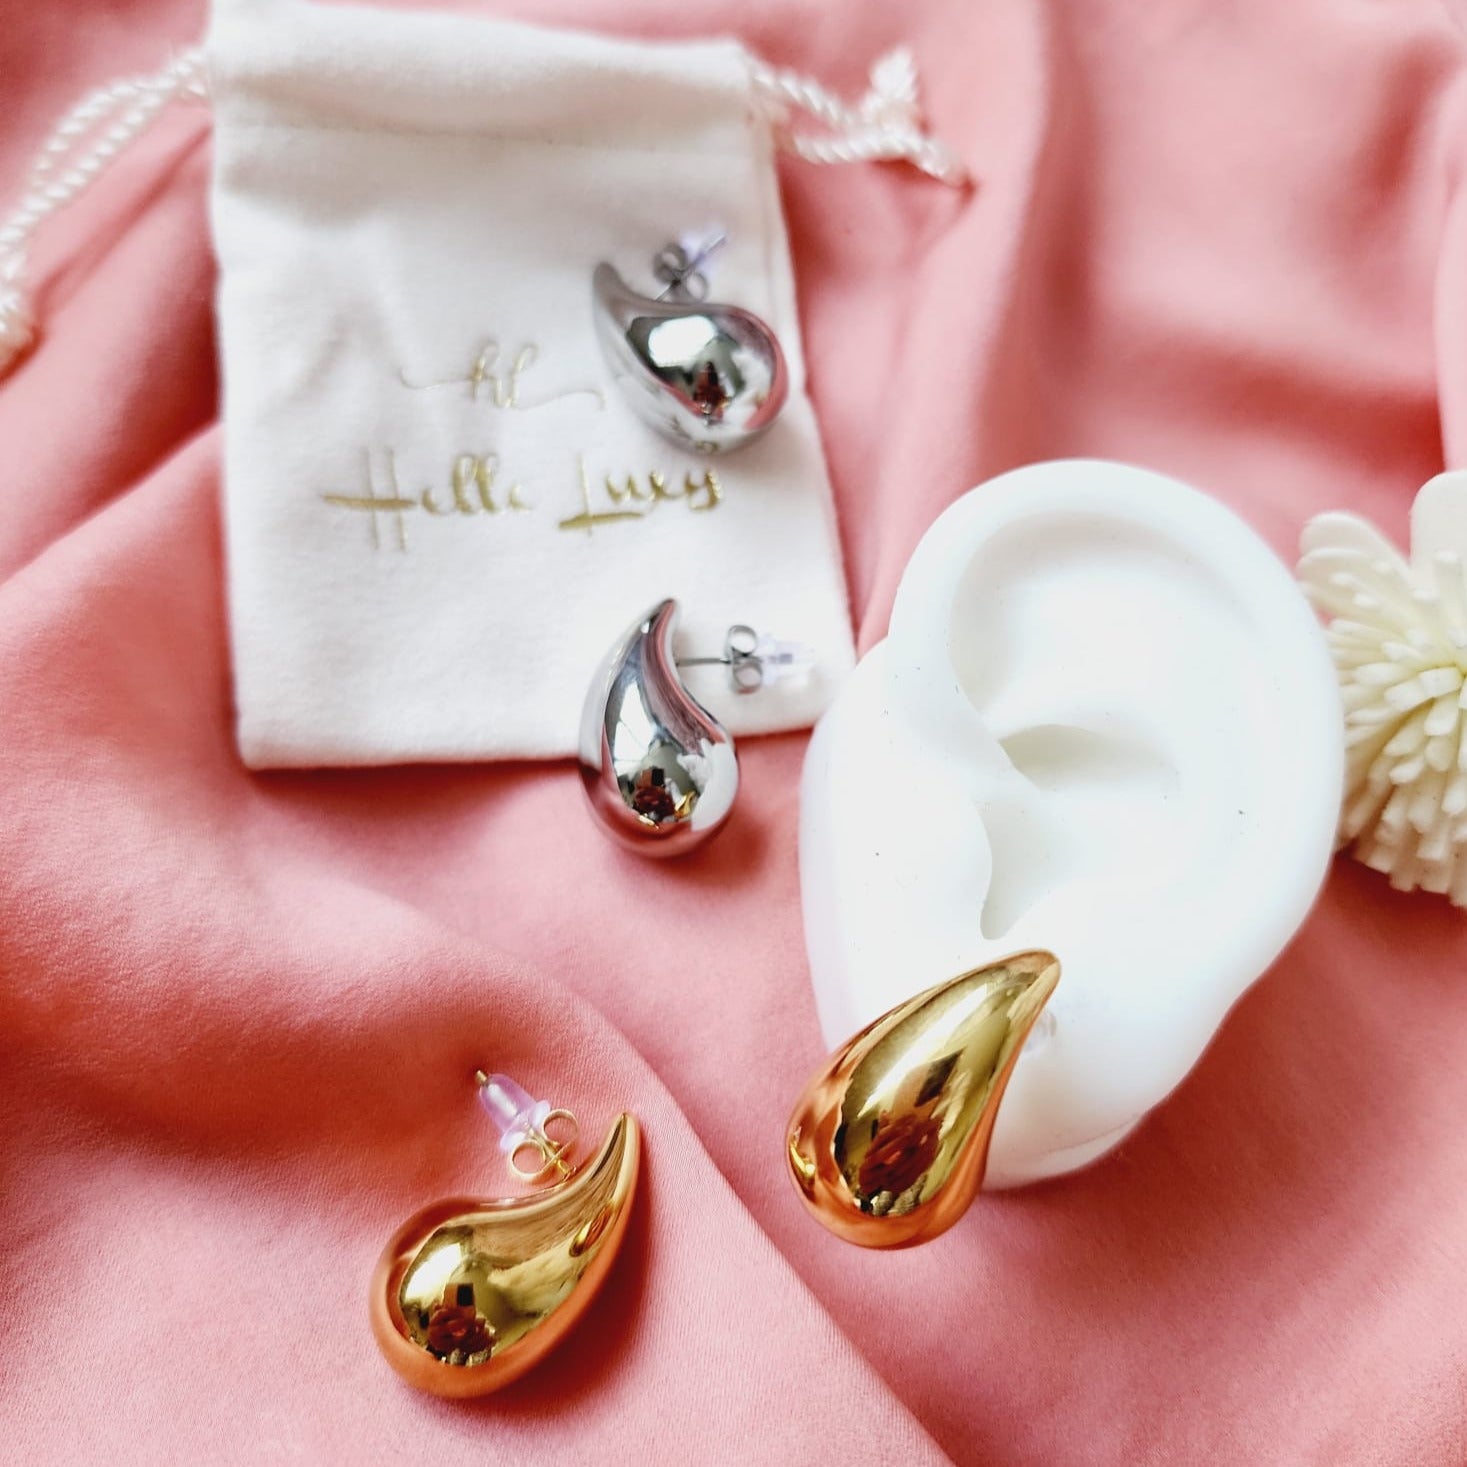 Two Tone Bold Tear Drop earrings, silver earrings, hypoallergenic earrings, teardrop maxi studs, 18k gold plated earrings, Waterproof earrings, Silver and gold earrings, Durable earrings, Elegant earrings, Timeless design, aesthetic earrings, timeless earrings, Stylish jewelry, stylish earrings, Versatile jewelry